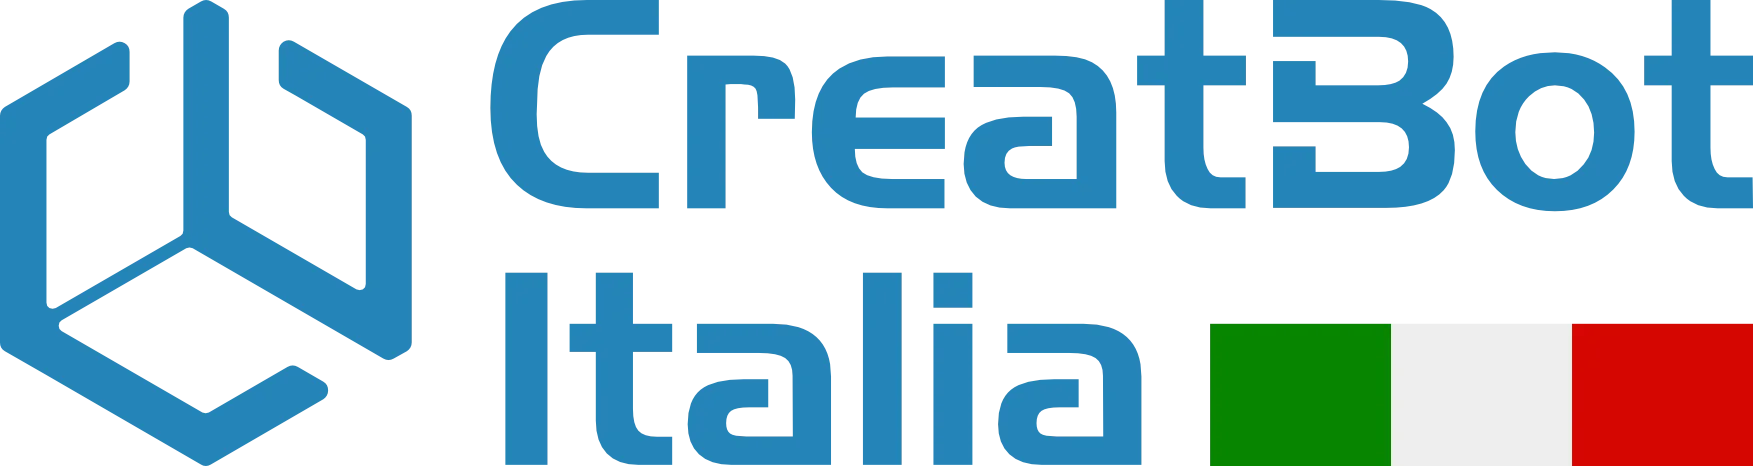 Creatbot Italia - Distributore Ufficiale